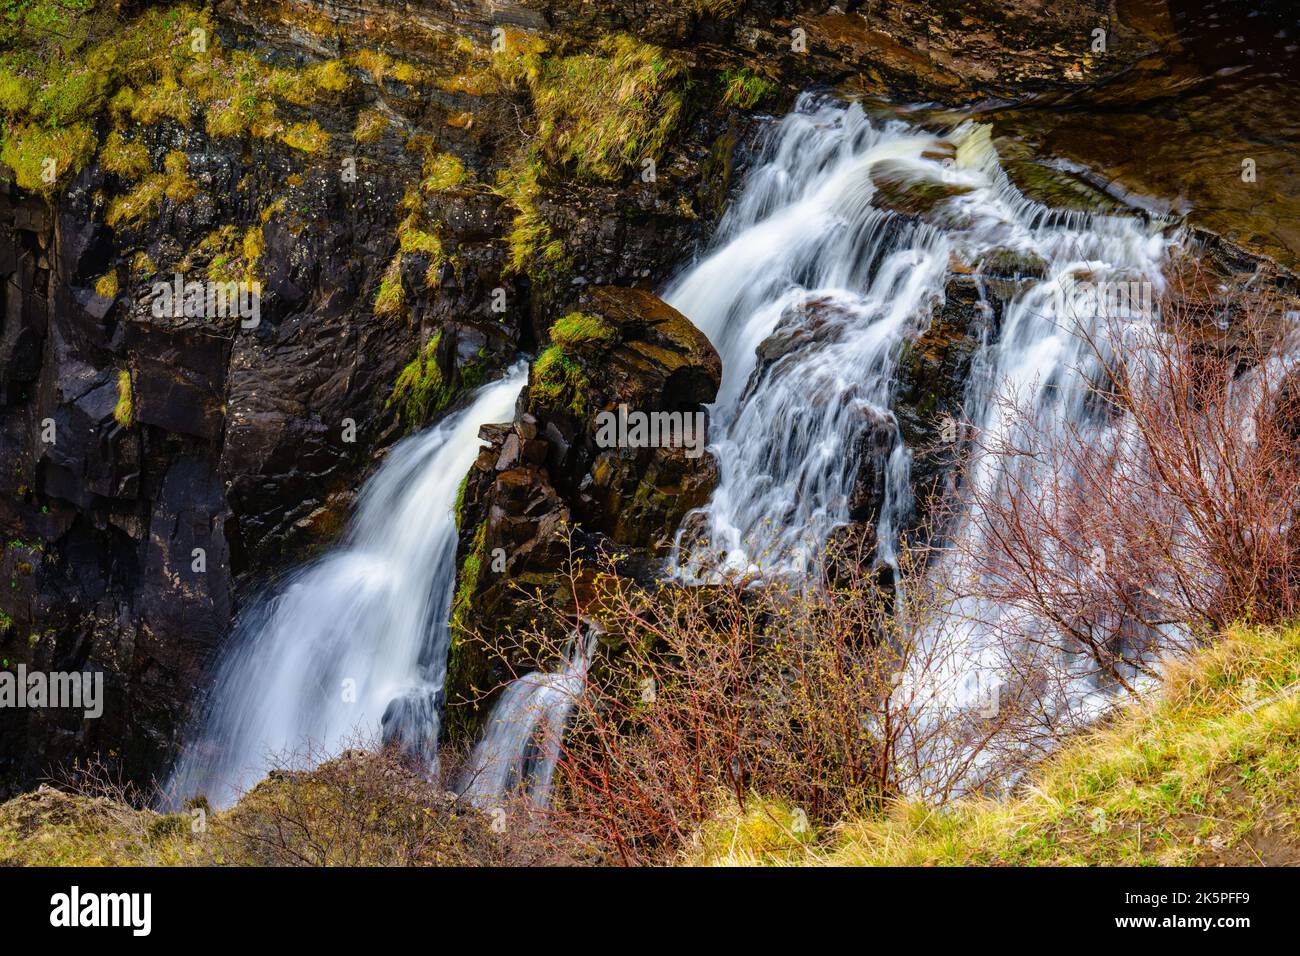 Ein wunderschöner Wasserfall, der die mit Moos bedeckten Felsen hinunter fließt und von blattlosen Bäumen umgeben ist Stockfoto